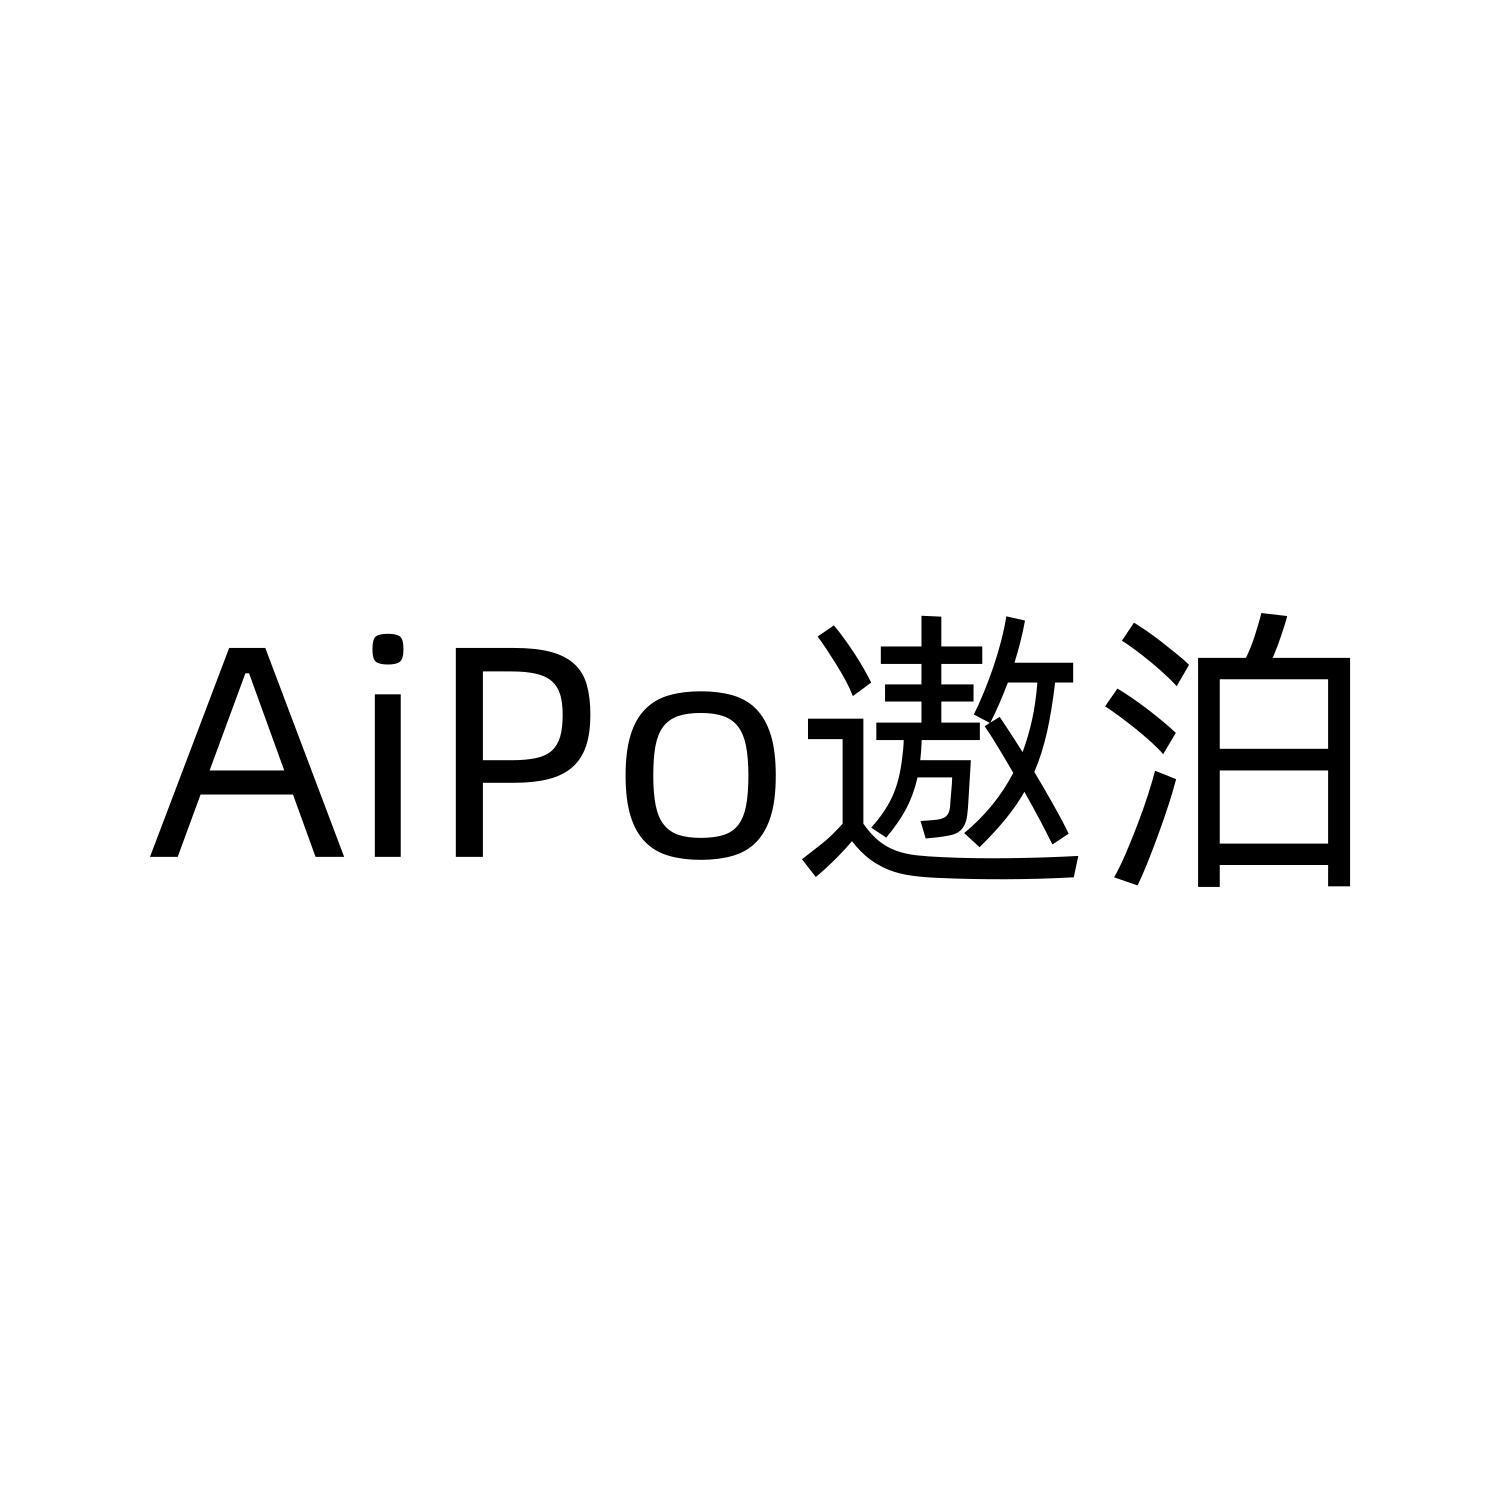 AIPO 遨泊logo